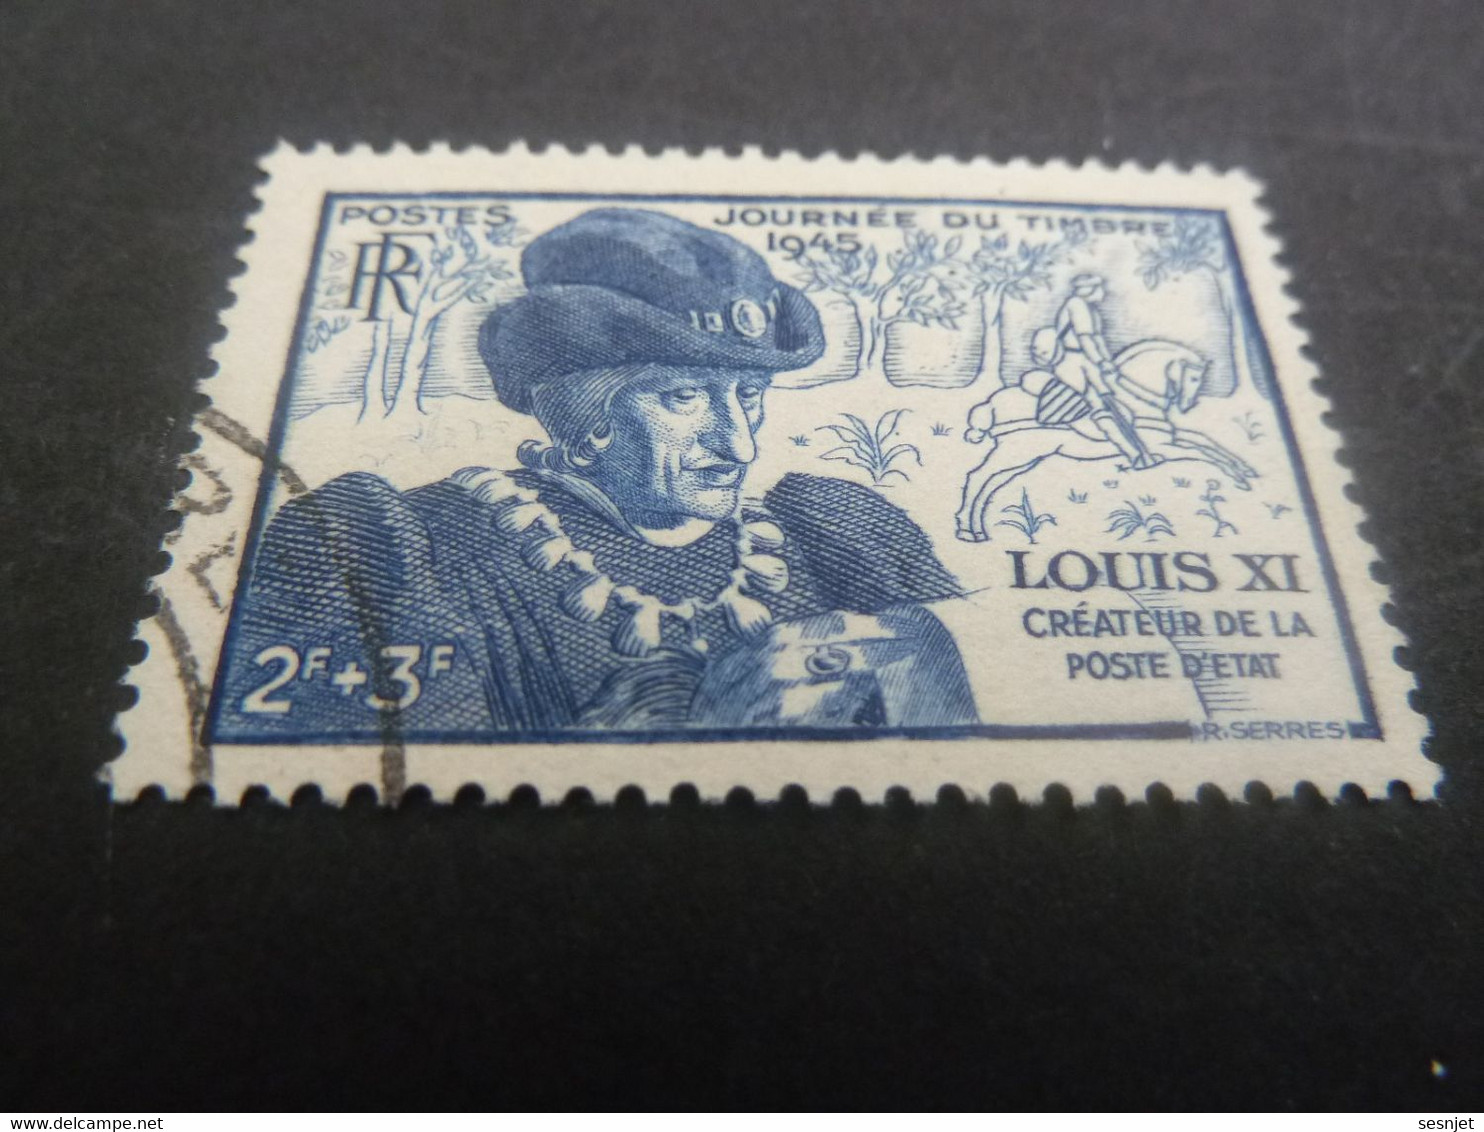 Louis XI - Le Prudent (1423-1483) Roi - 2f.+3f. - Bleu - Oblitéré - Année 1945 - - Oblitérés